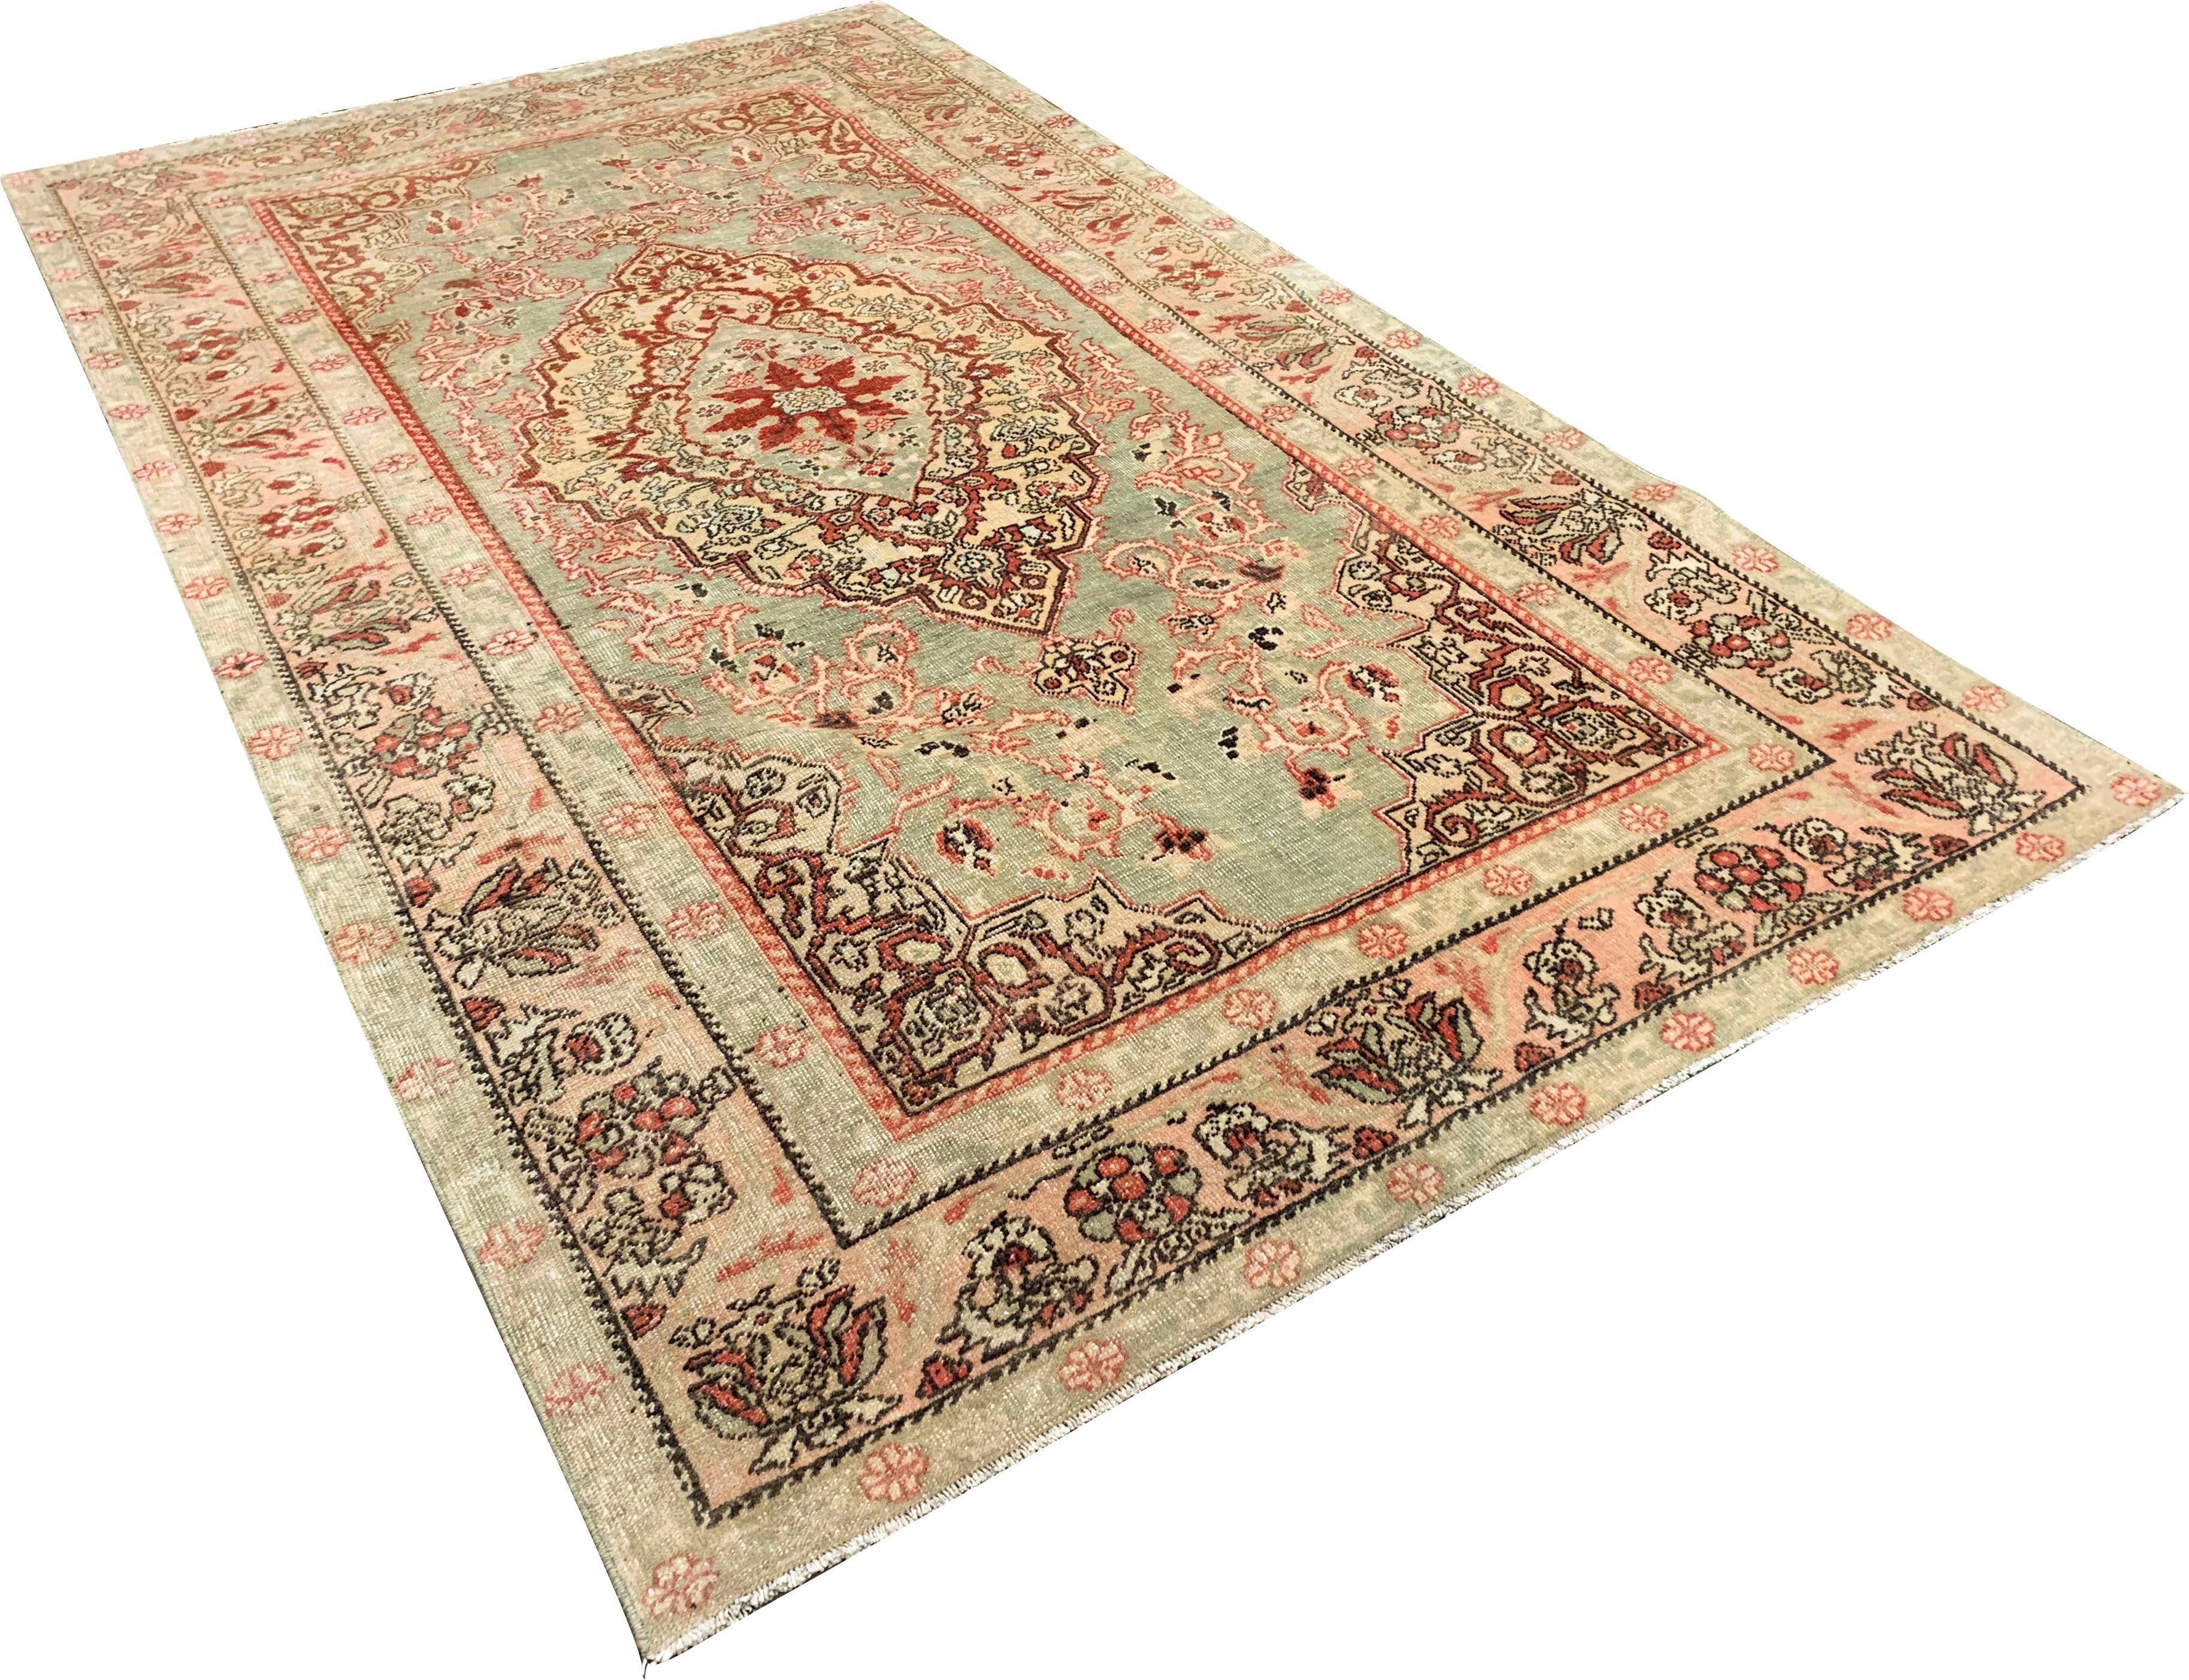 Alter Oushak-Teppich, um 1940, 4'2 x 6'11. Handgeknüpft in der Türkei, wo die Teppichweberei eher eine Kultur als ein Geschäft ist. Teppiche aus der Türkei sind bekannt für die hohe Qualität ihrer Wolle, ihre schönen Muster und warmen Farben. Diese